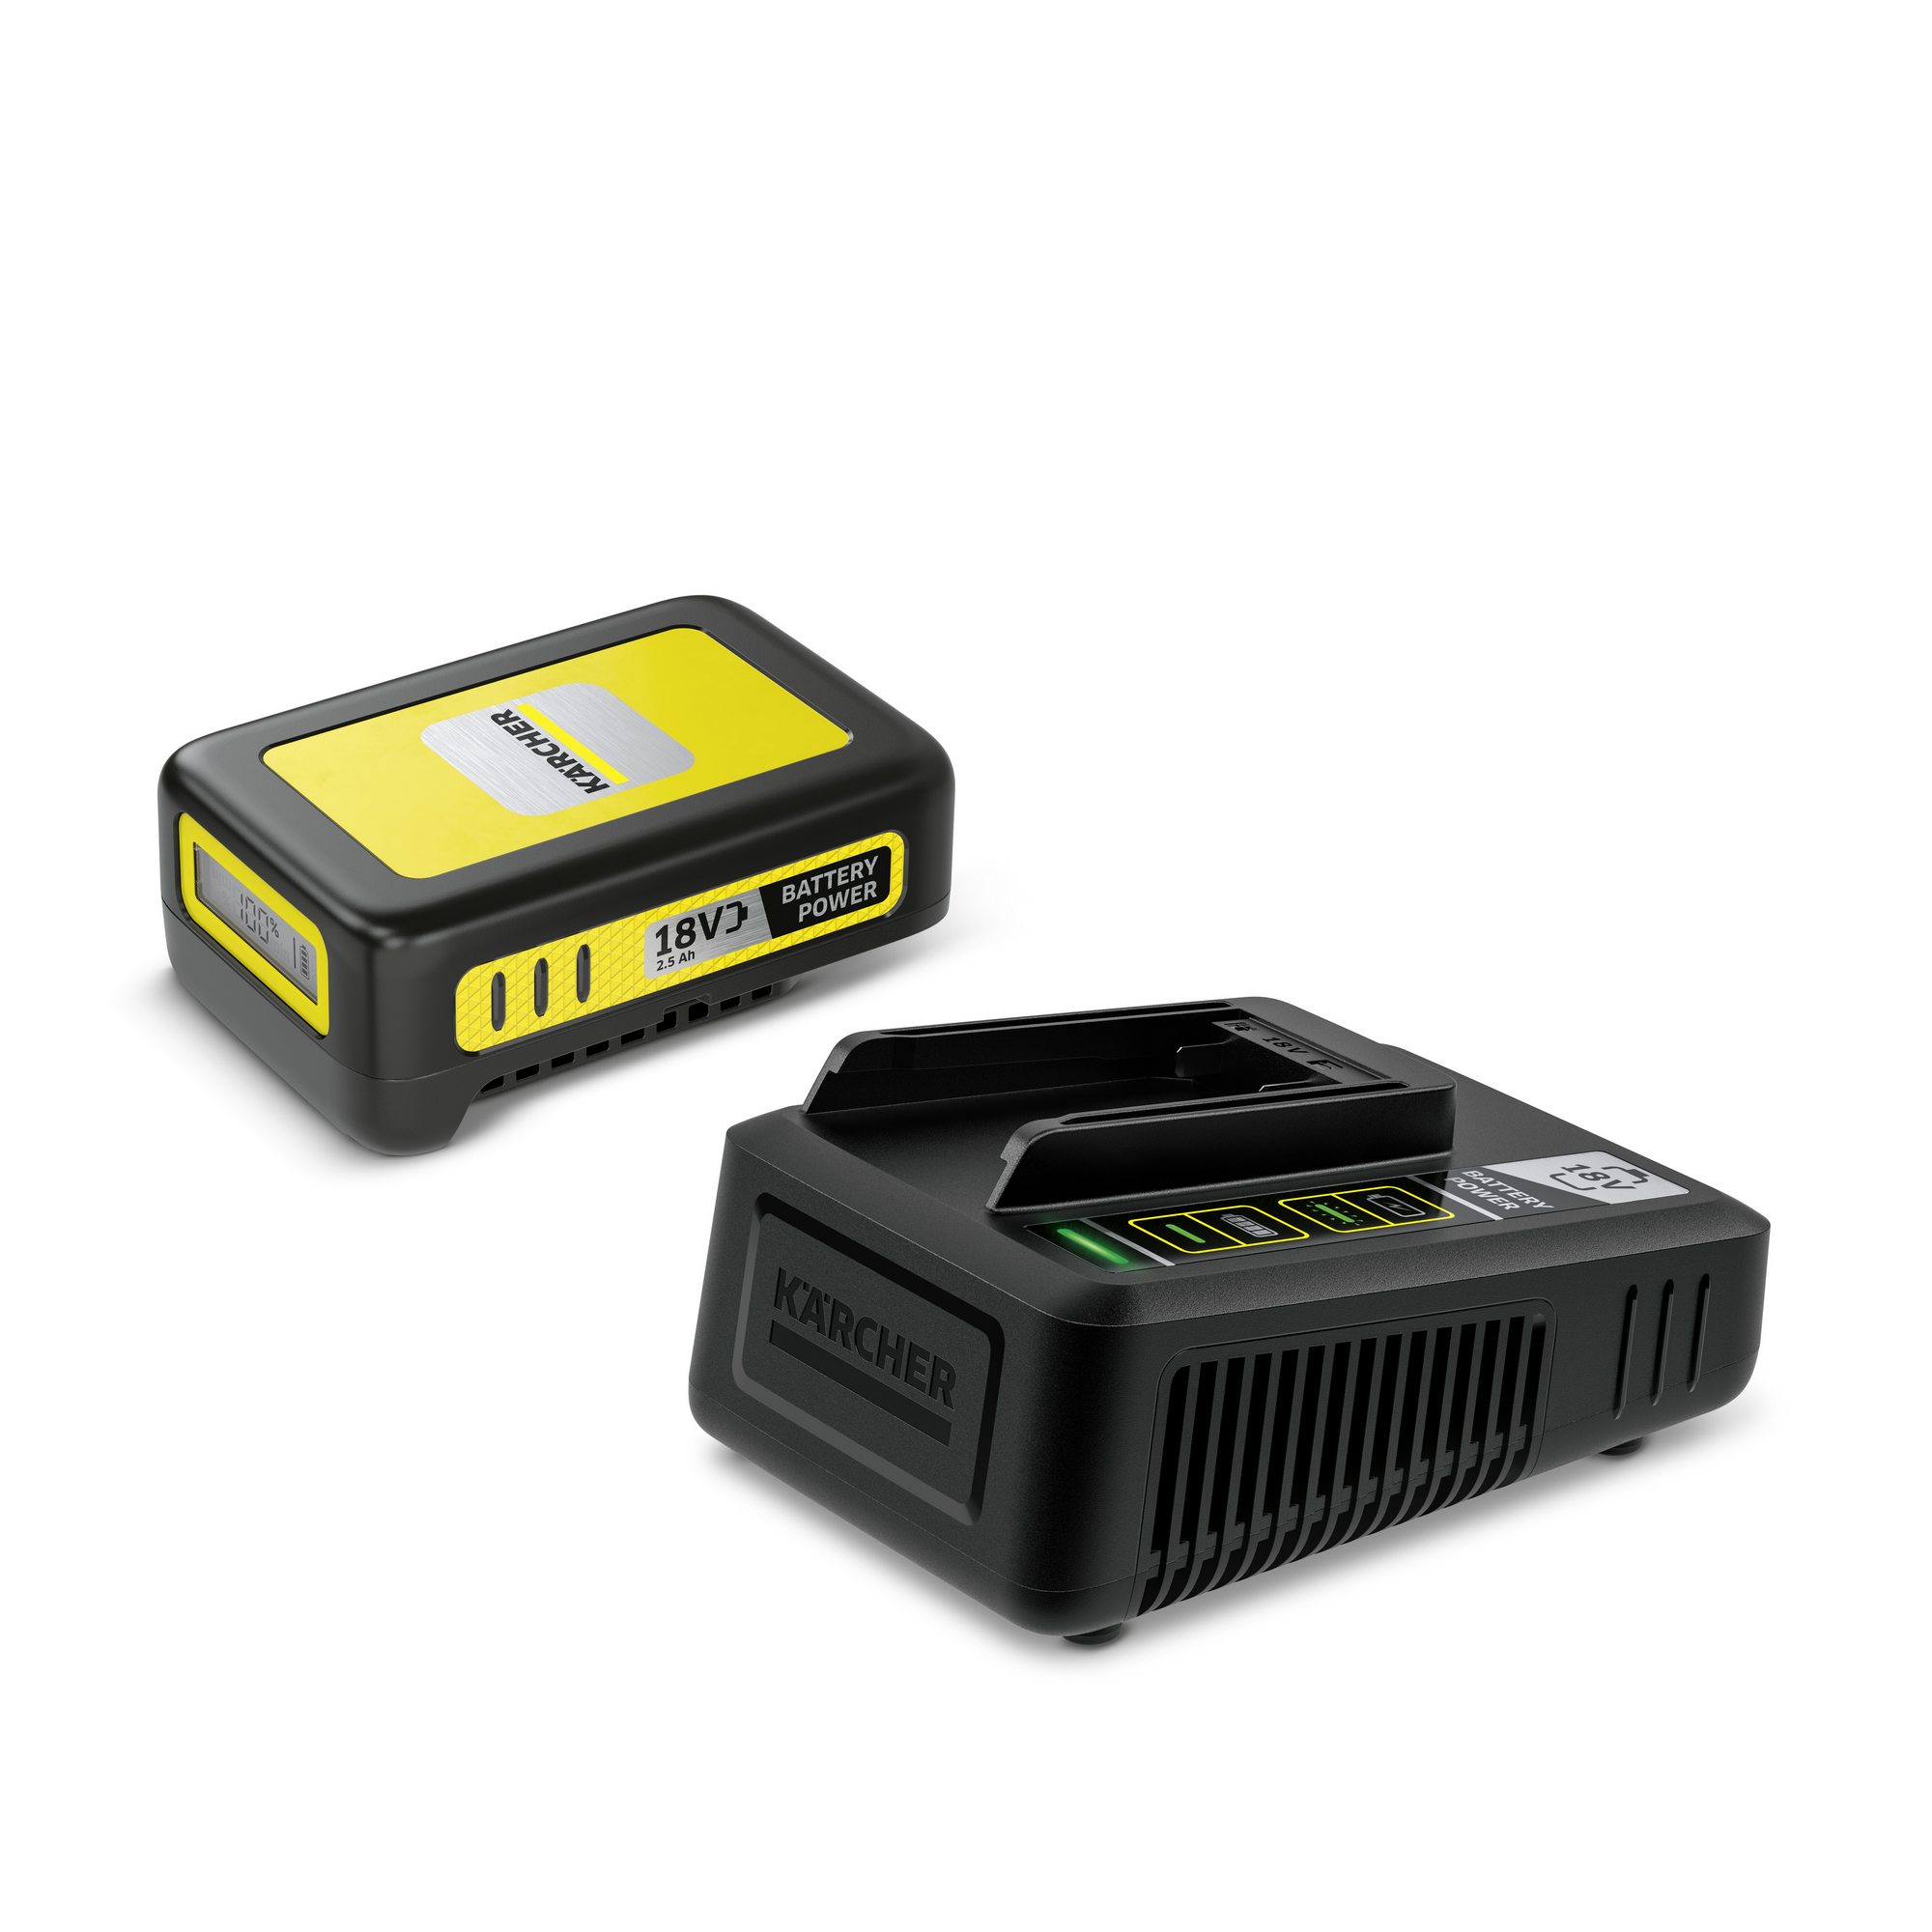 Starter-Kit 'Battery Power 18/25' Wechselakku mit Schnellladegerät, 18 V 2,5 Ah + product picture